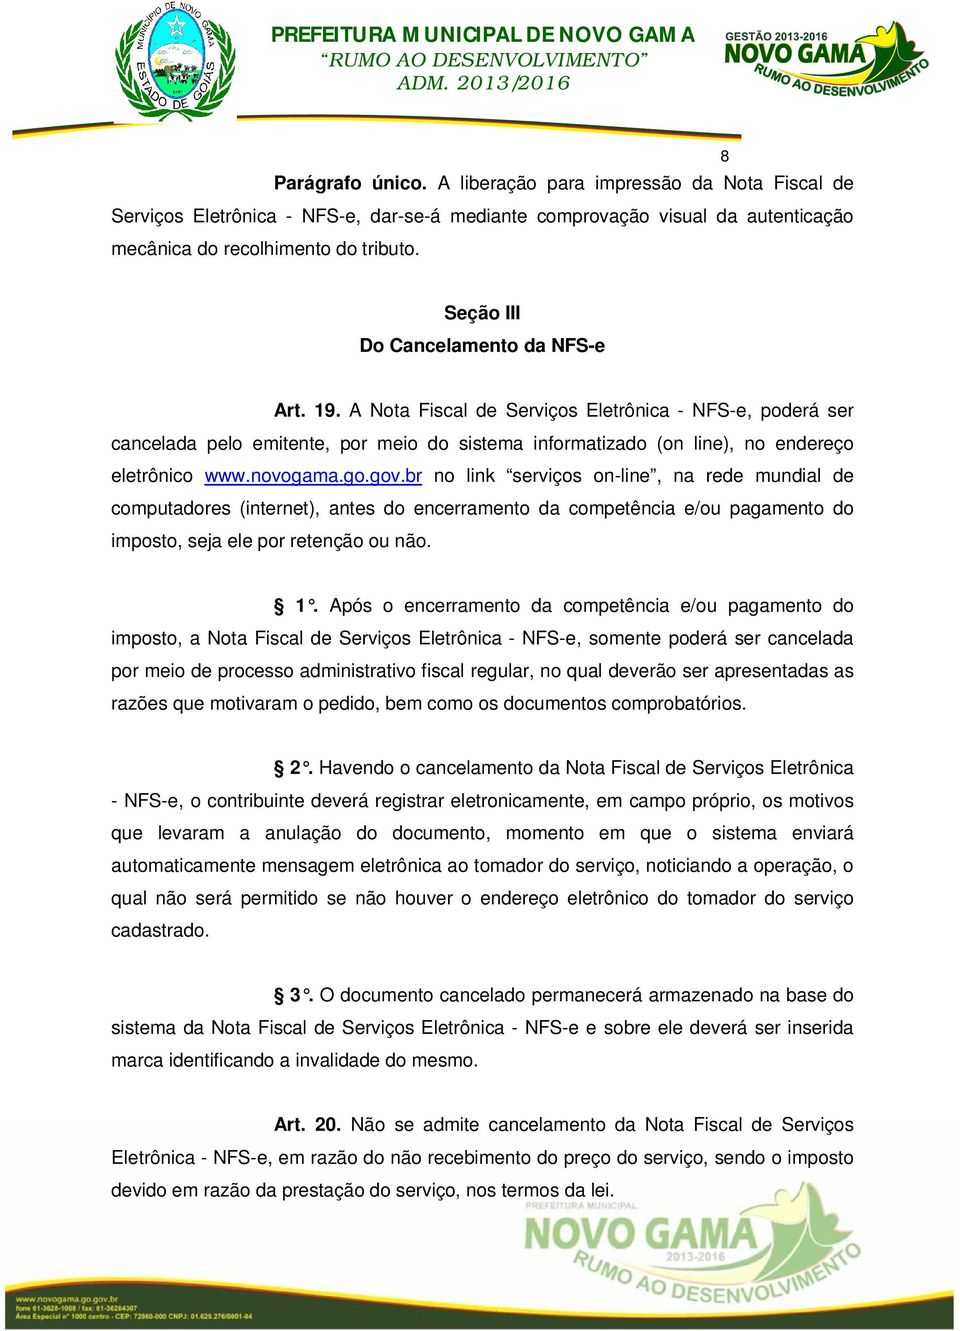 novogama.go.gov.br no link serviços on-line, na rede mundial de computadores (internet), antes do encerramento da competência e/ou pagamento do imposto, seja ele por retenção ou não. 1.